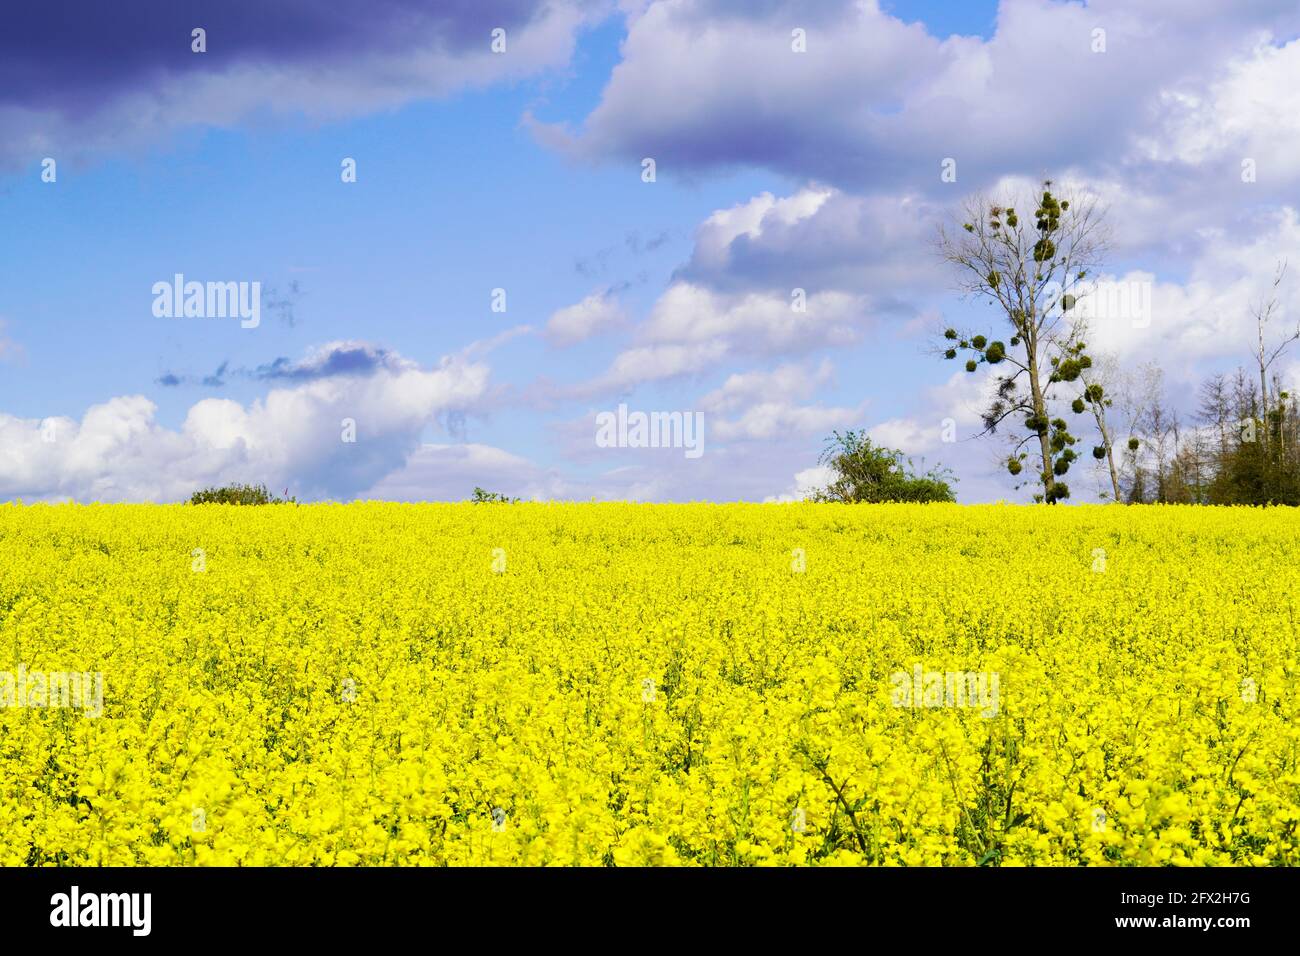 Champ de colza jaune avec nuages d'orage en arrière-plan. Plante utile dans l'agriculture. Brassica napus. Fleurs jaunes dans un champ. Banque D'Images